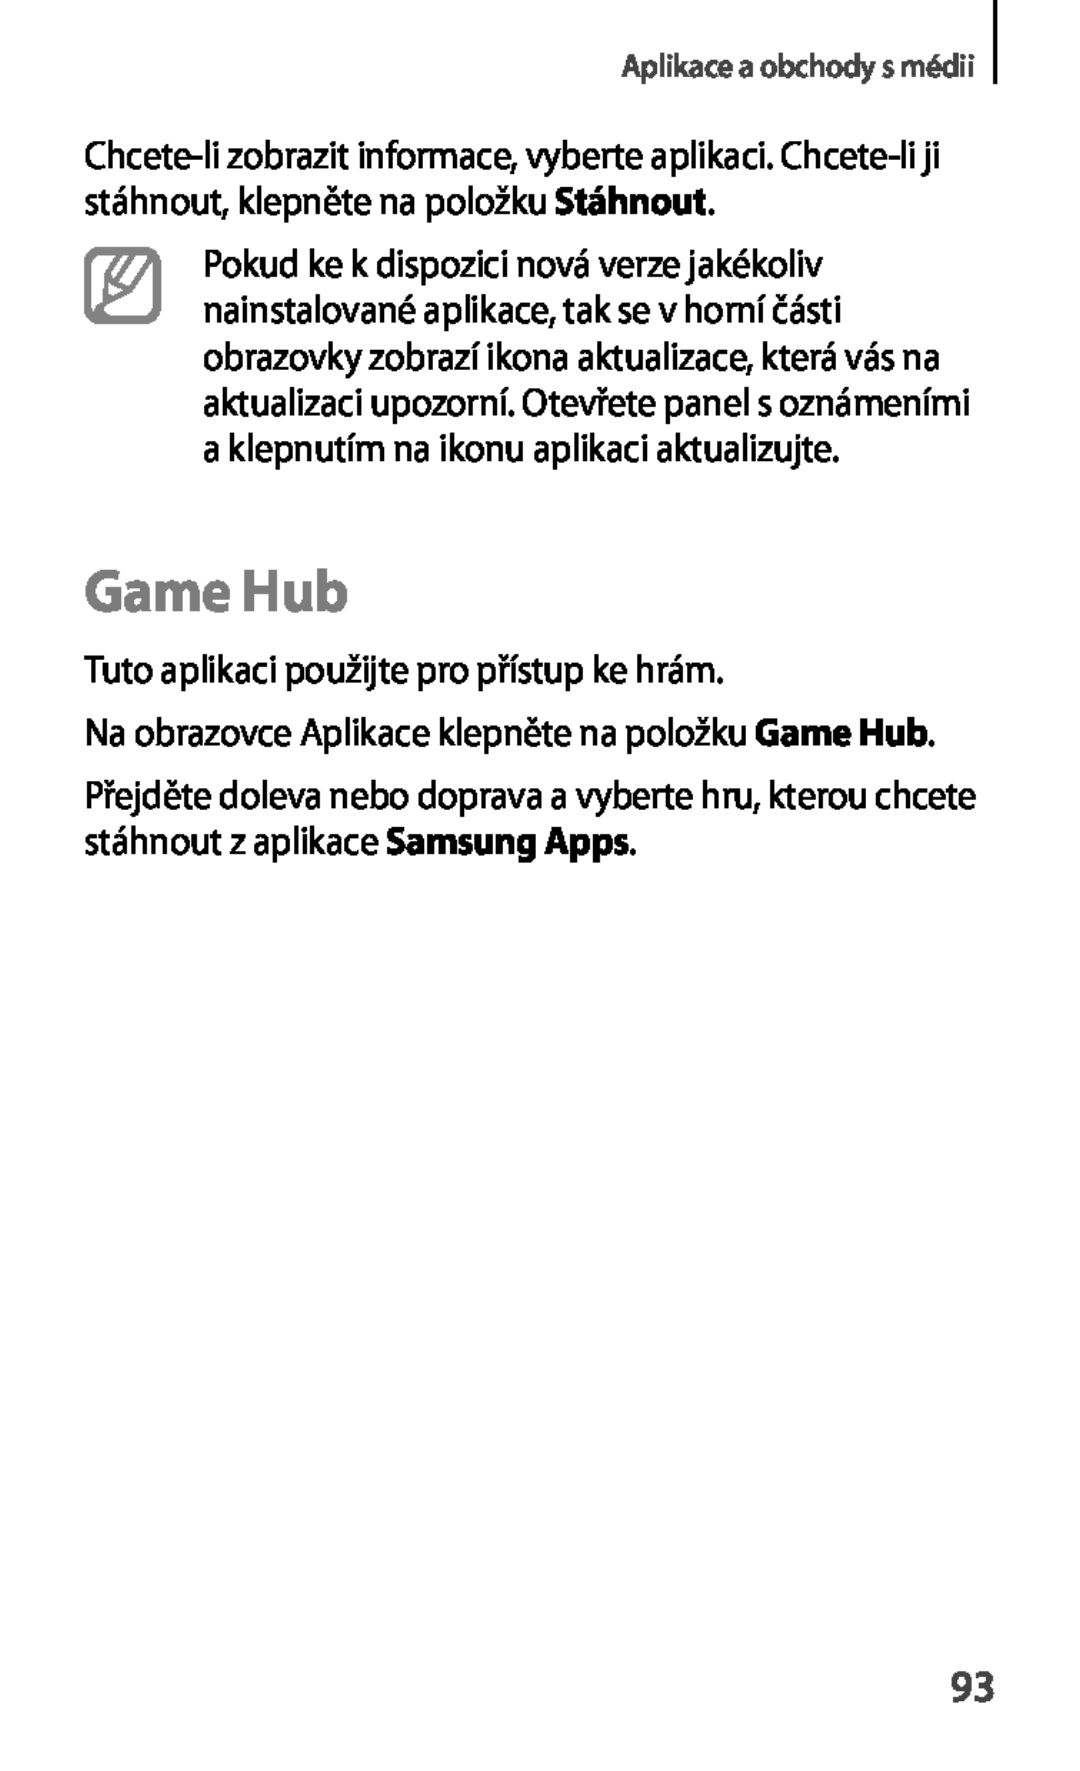 Samsung GT-S6810PWNTMS, GT-S6810MBNEUR, GT-S6810PWNCOS, GT-S6810MBNGBL Game Hub, Tuto aplikaci použijte pro přístup ke hrám 